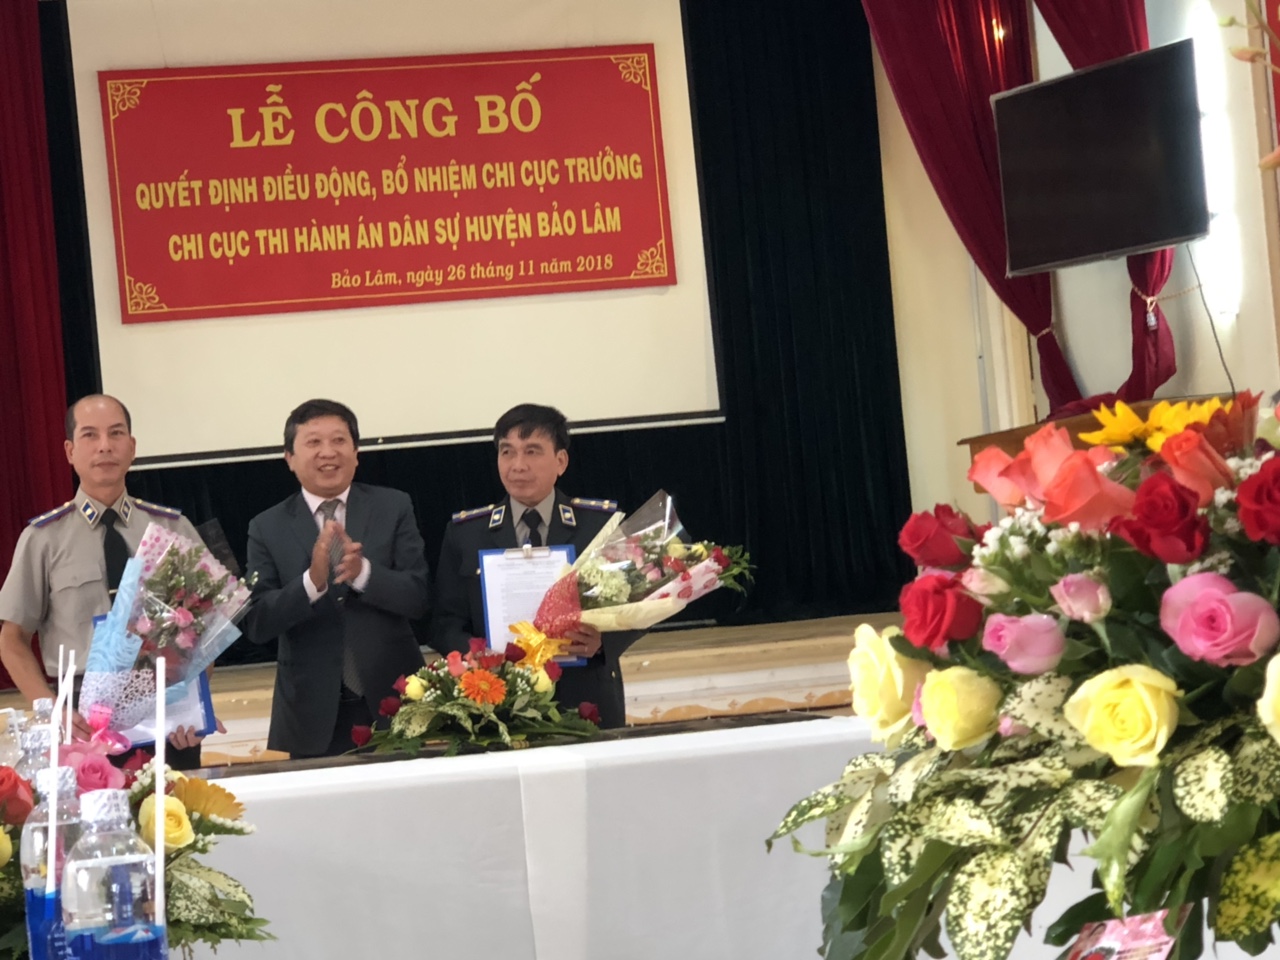 Cục Thi hành án dân sự tỉnh Lâm Đồng tổ chức Lễ công bố quyết định điều động, bổ nhiệm Lãnh đạo Chi cục Thi hành án dân sự huyện Bảo Lâm.